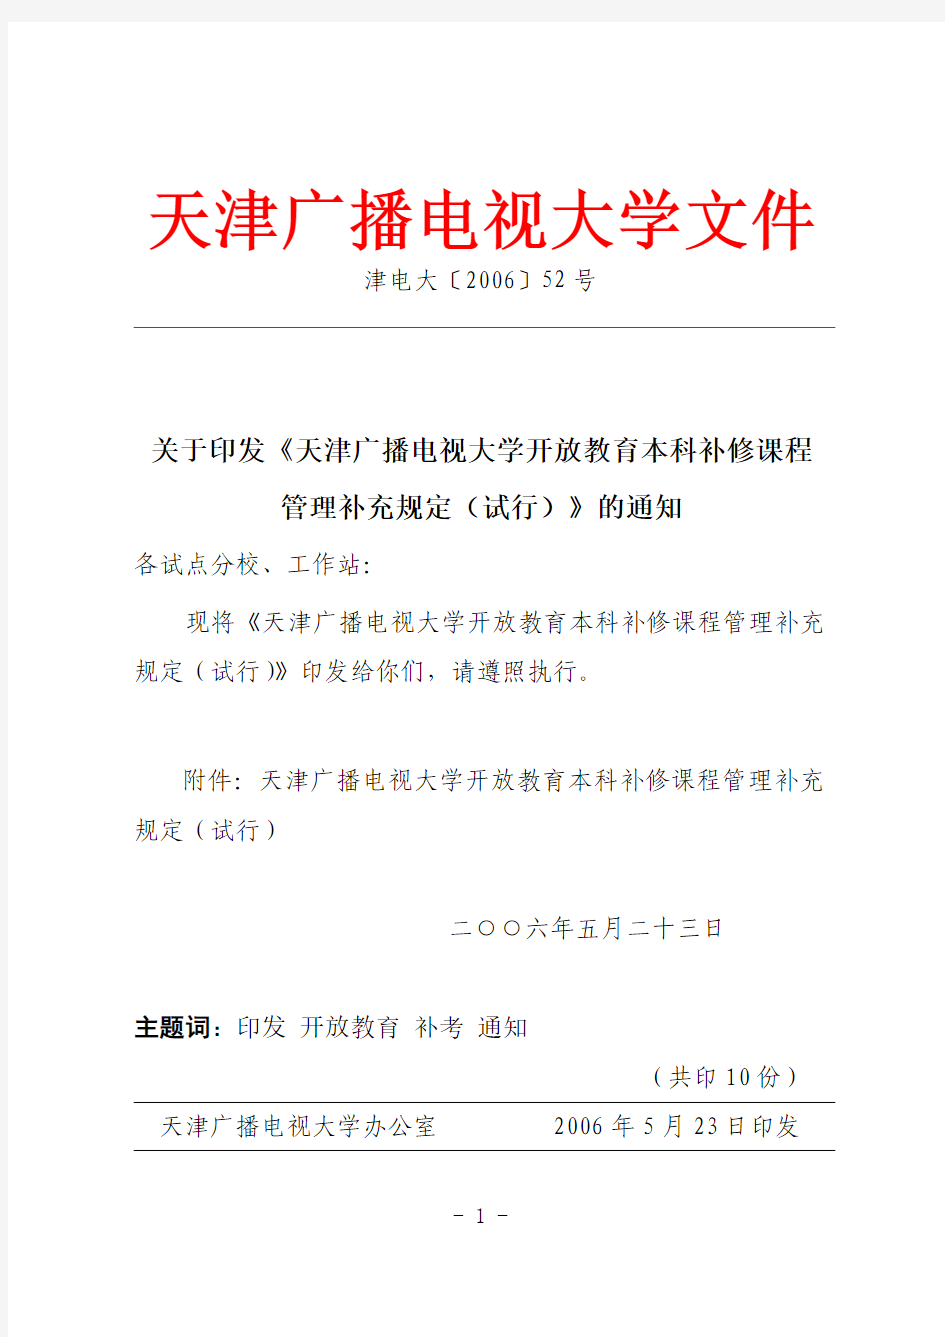 关于印发《天津广播电视大学开放教育本科补修课程管理补充规定(试行)》的通知